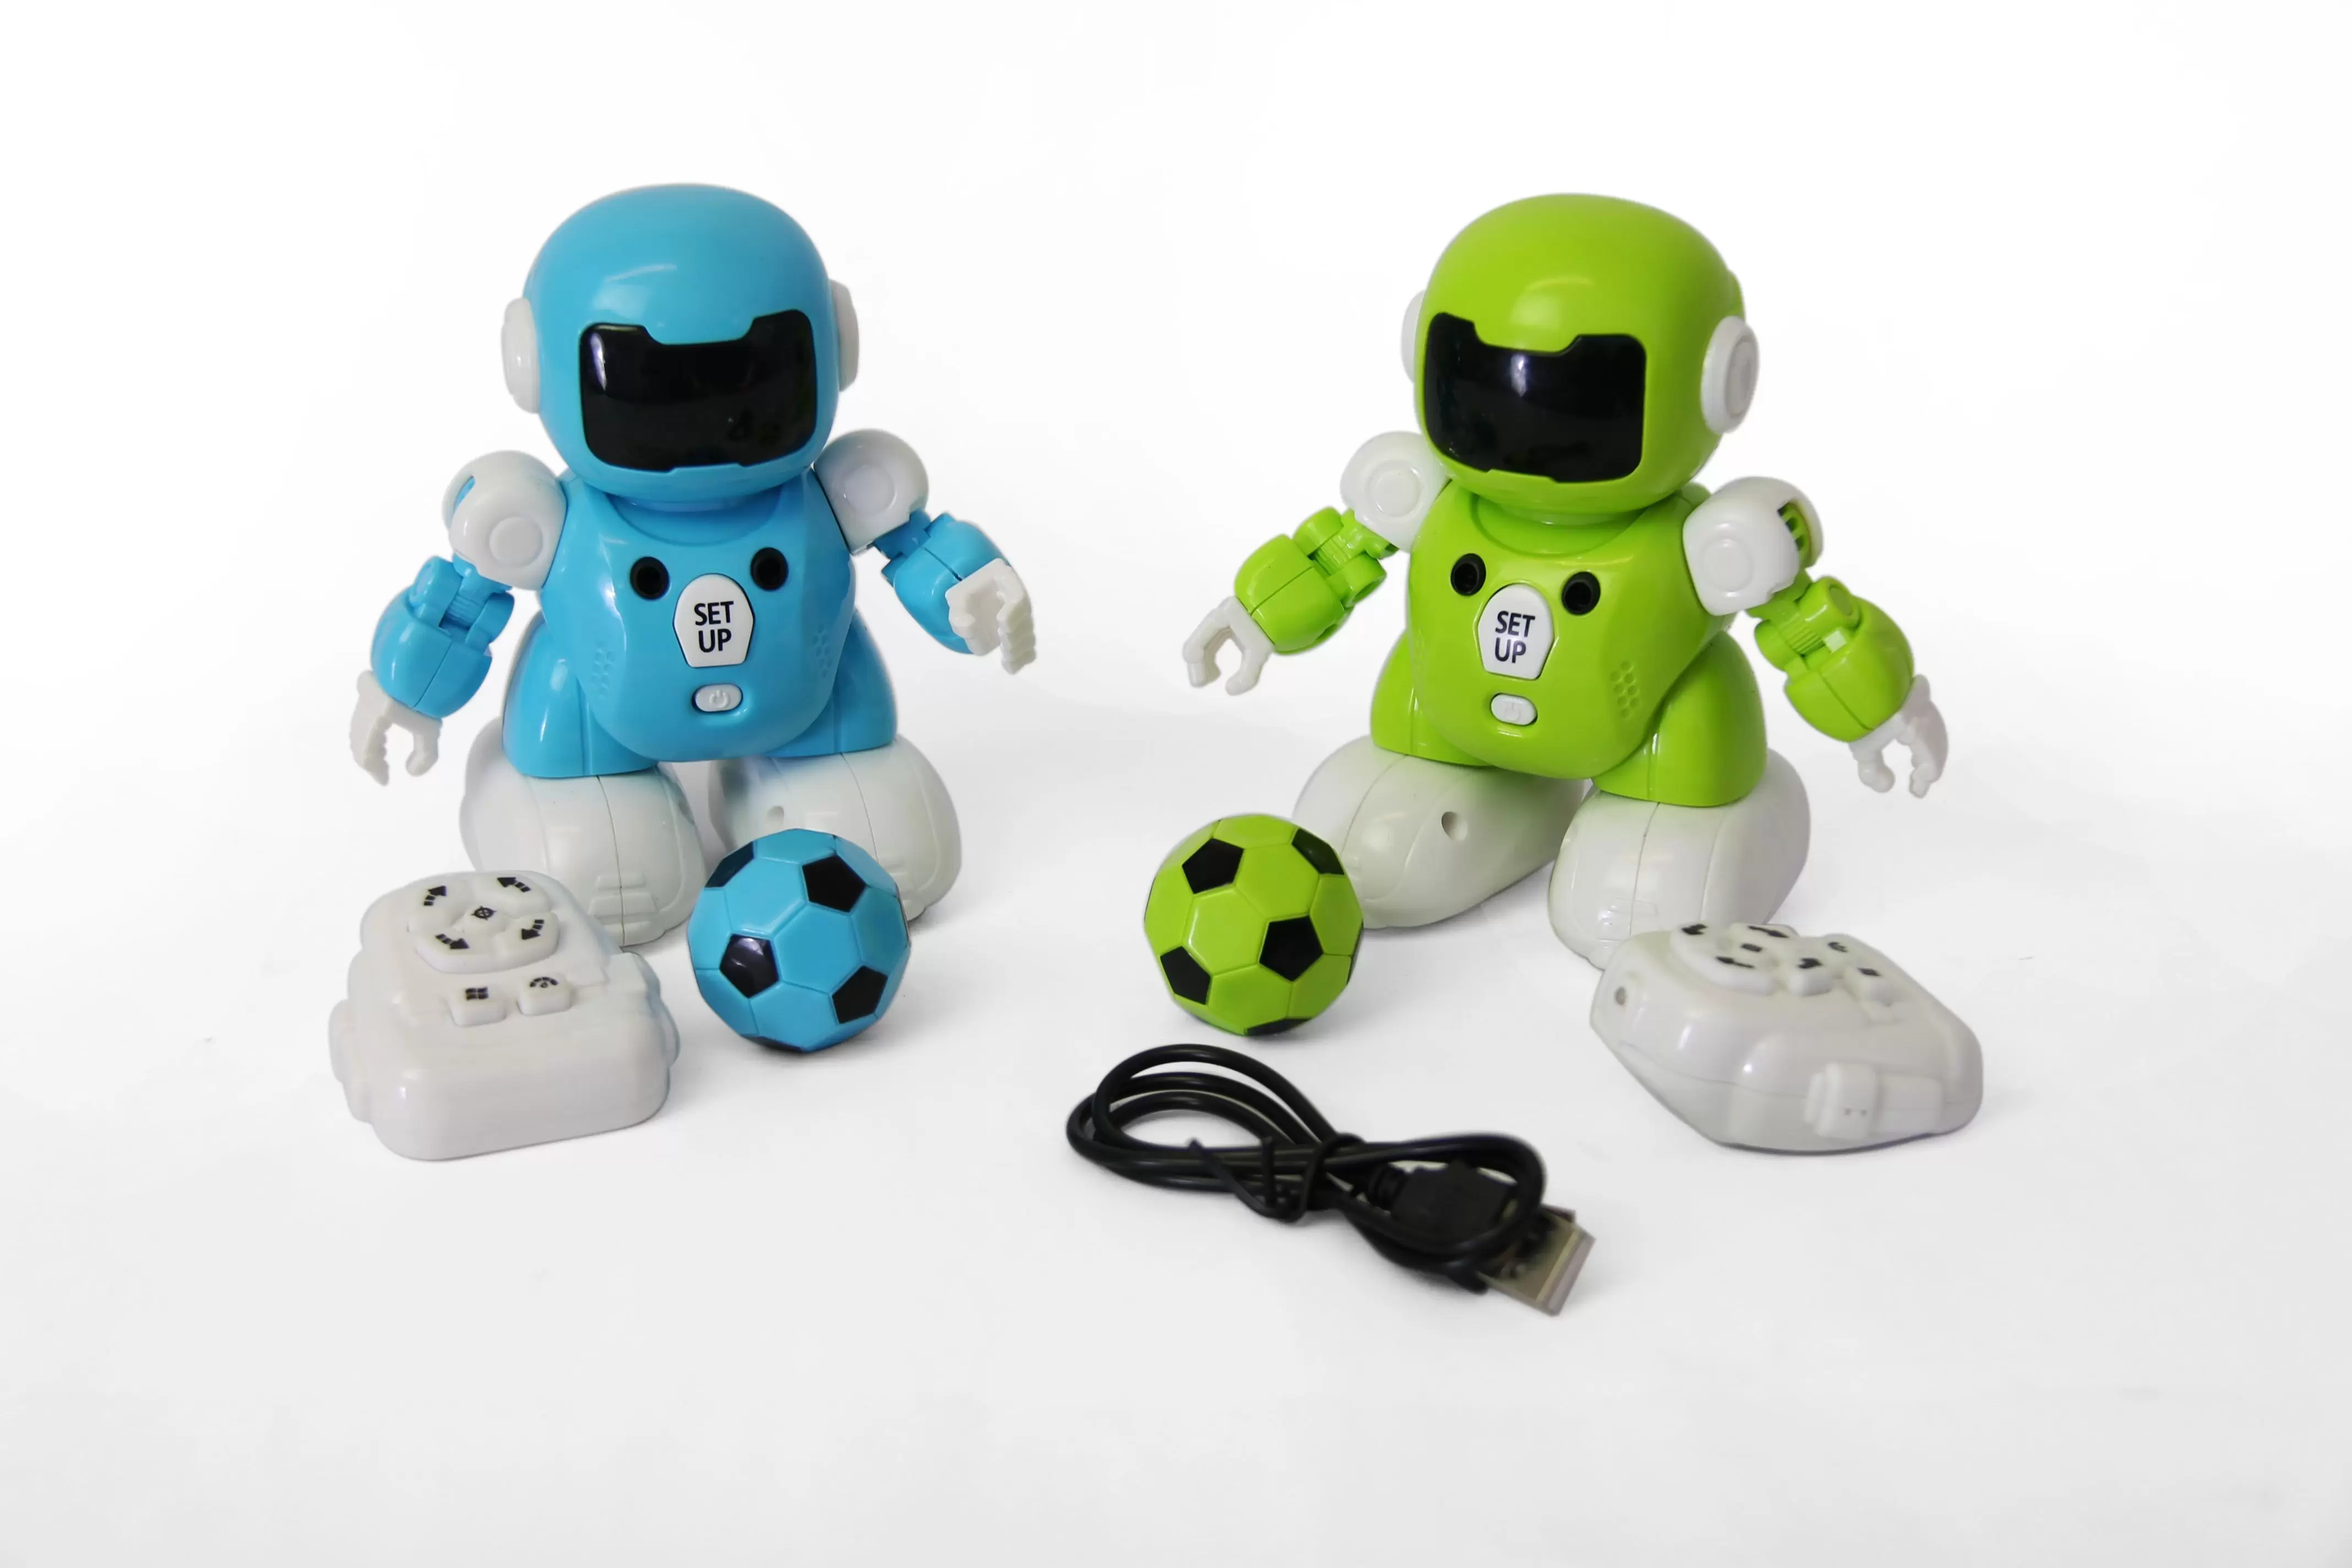 Роботы-футболисты на дистанционном управлении 967